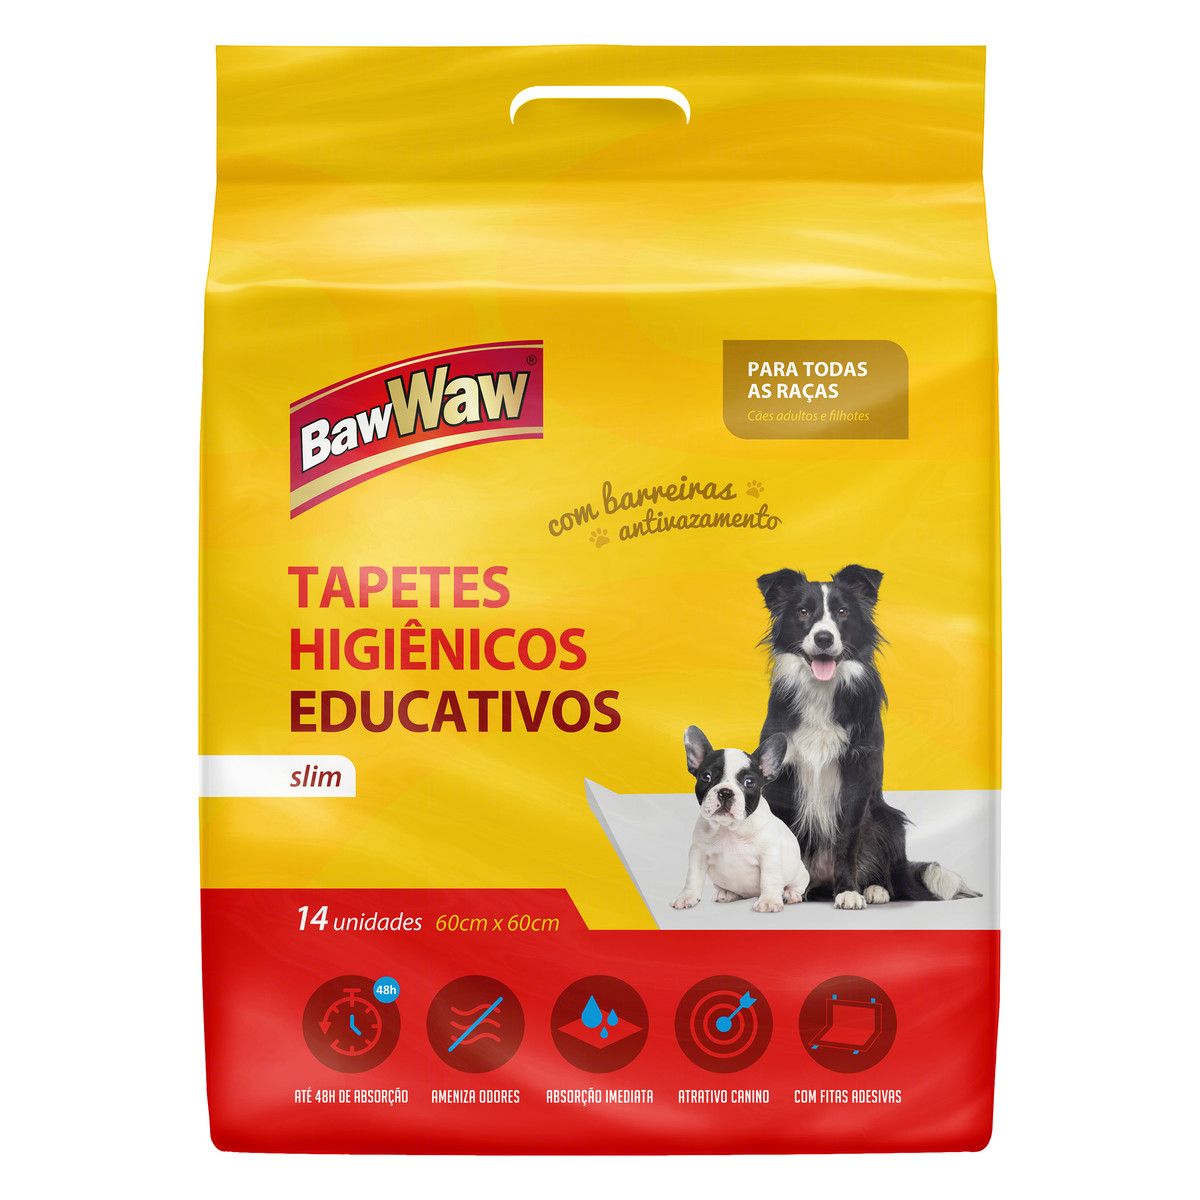 Tapete Higiênico Educativo para Cães Slim Baw Waw 60cm x 60cm Pacote 14 Unidades